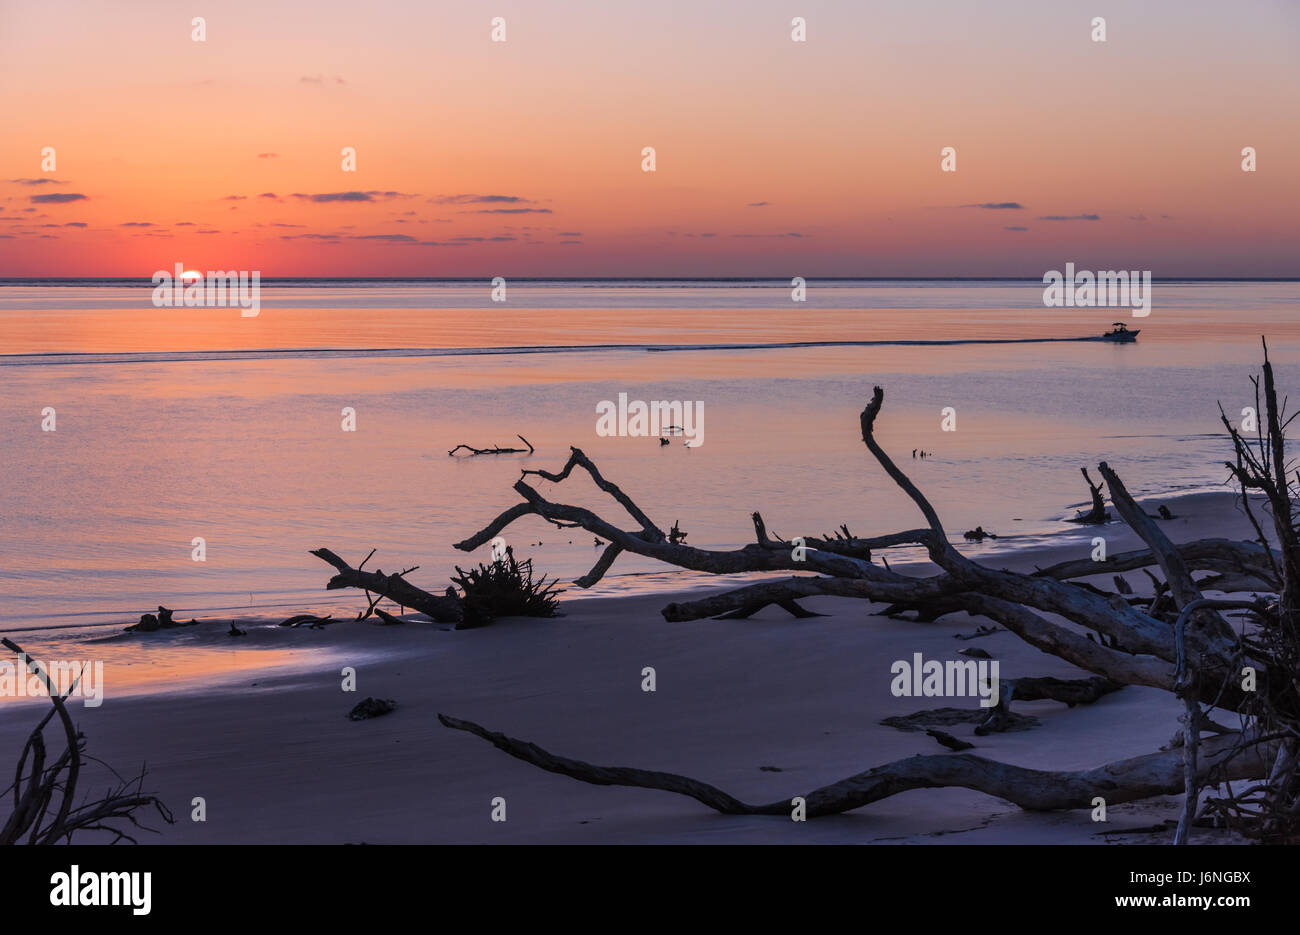 Le soleil se profile à l'horizon sur un matin calme, à la plage en gros Boneyard Talbot Island State Park dans le nord-est de la Floride. (USA) Banque D'Images